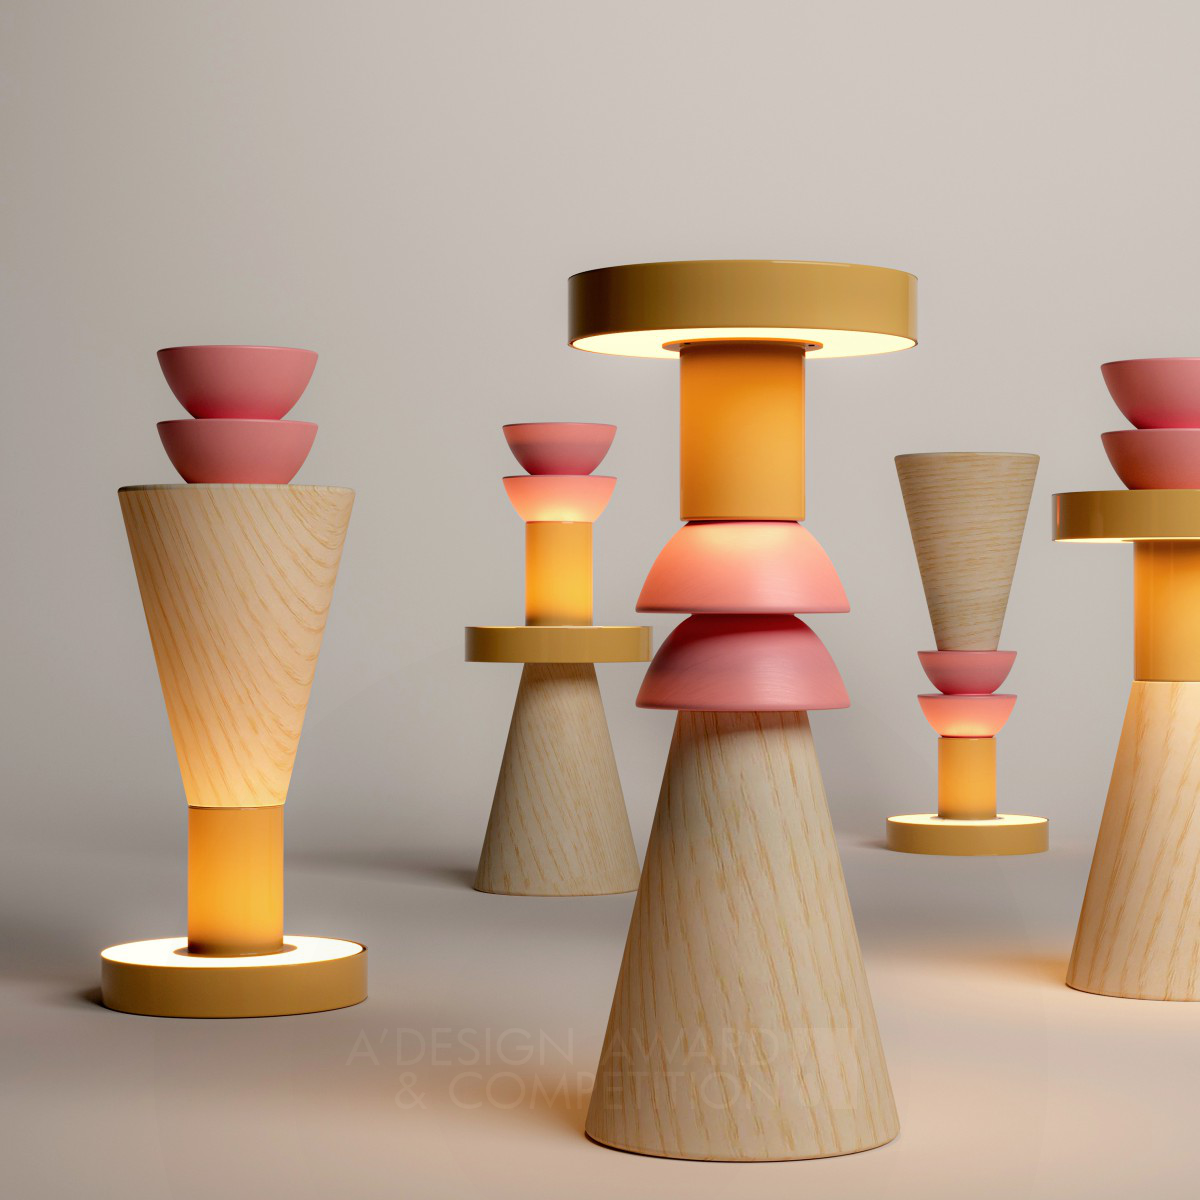 Scacco Matto: Een Draagbare Lamp die Kunst en Design Combineert